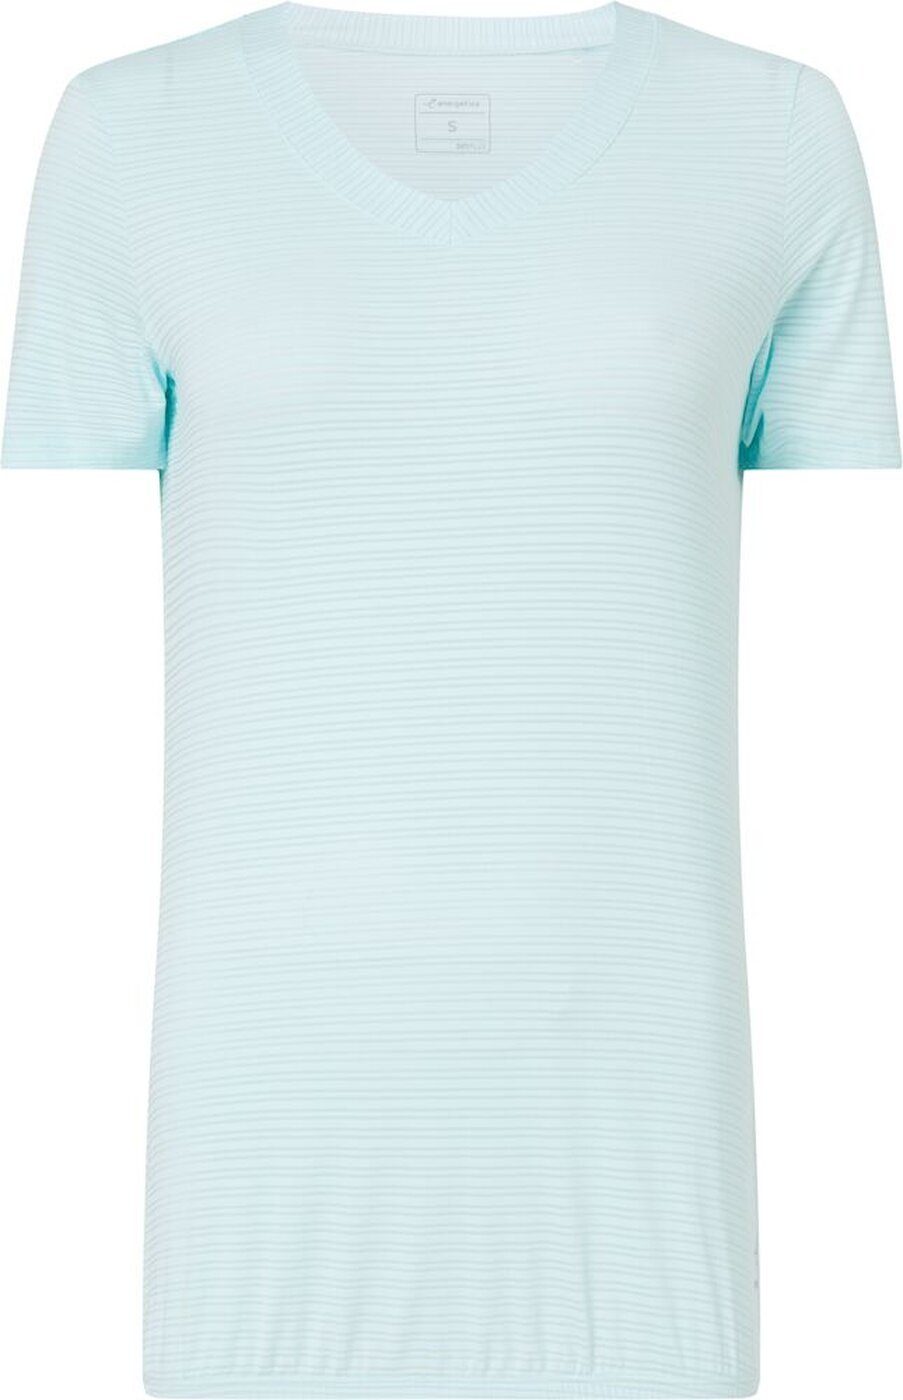 Verkaufsförderung Energetics Kurzarmshirt Da.-T-Shirt Ganja W 572 LIGHT BLUE